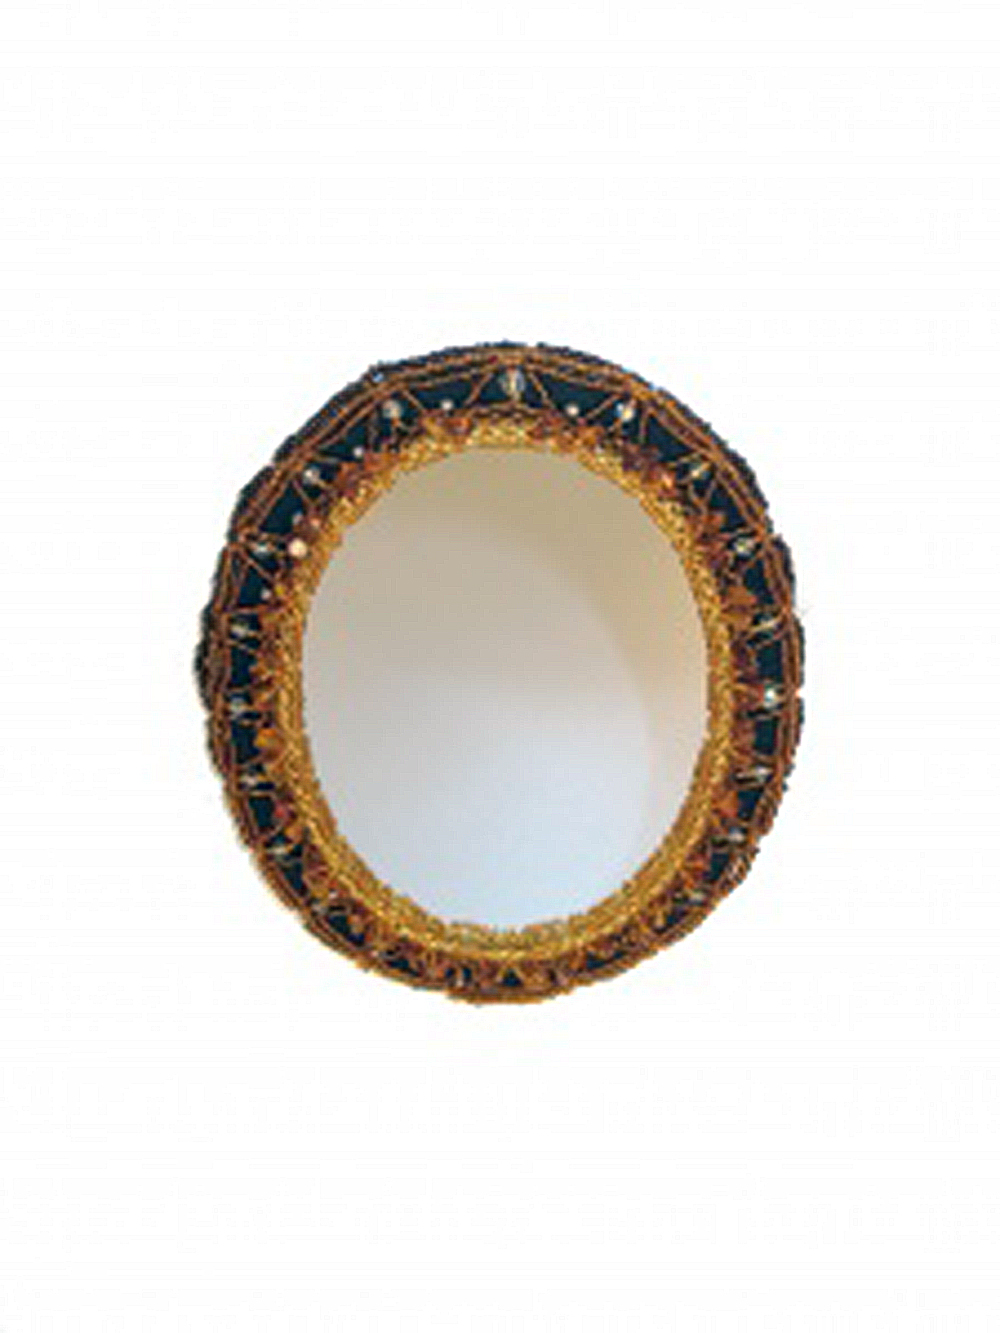 дамское зеркало из янтаря